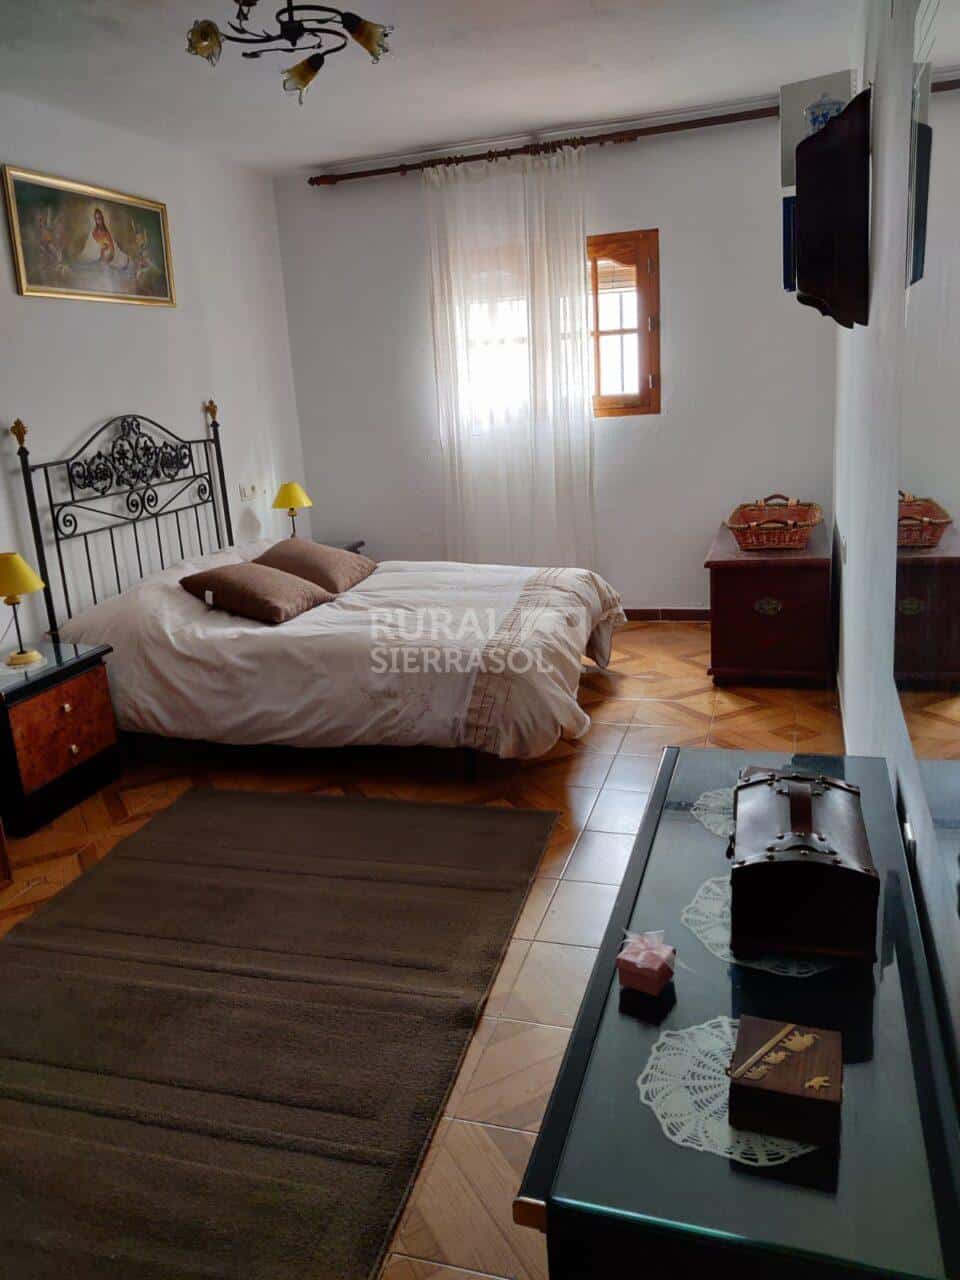 Habitación de matrimonio de planta baja de casa rural en El Burgo (Málaga) referencia 4089